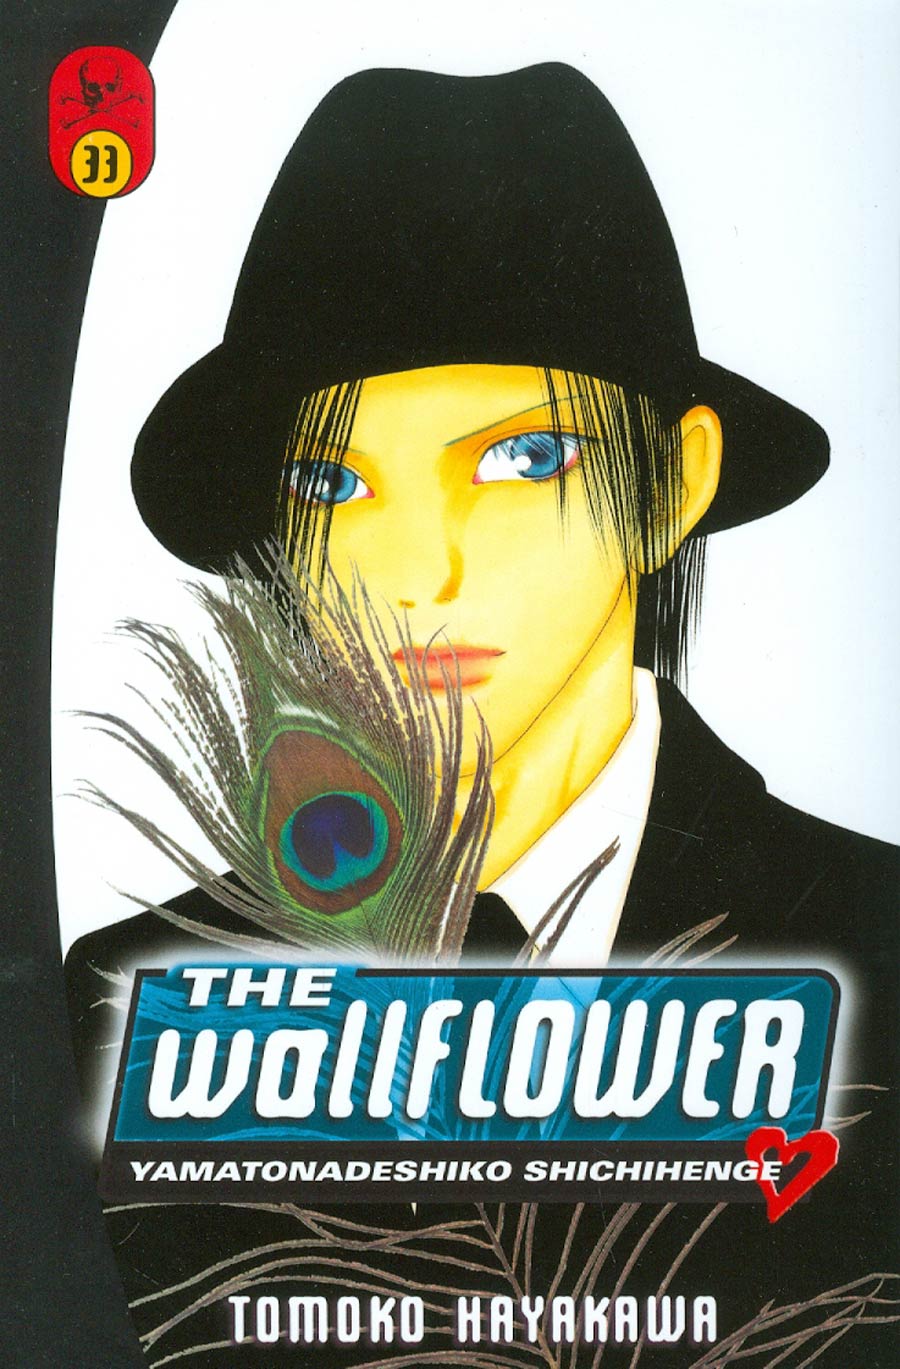 Wallflower Vol 33 GN